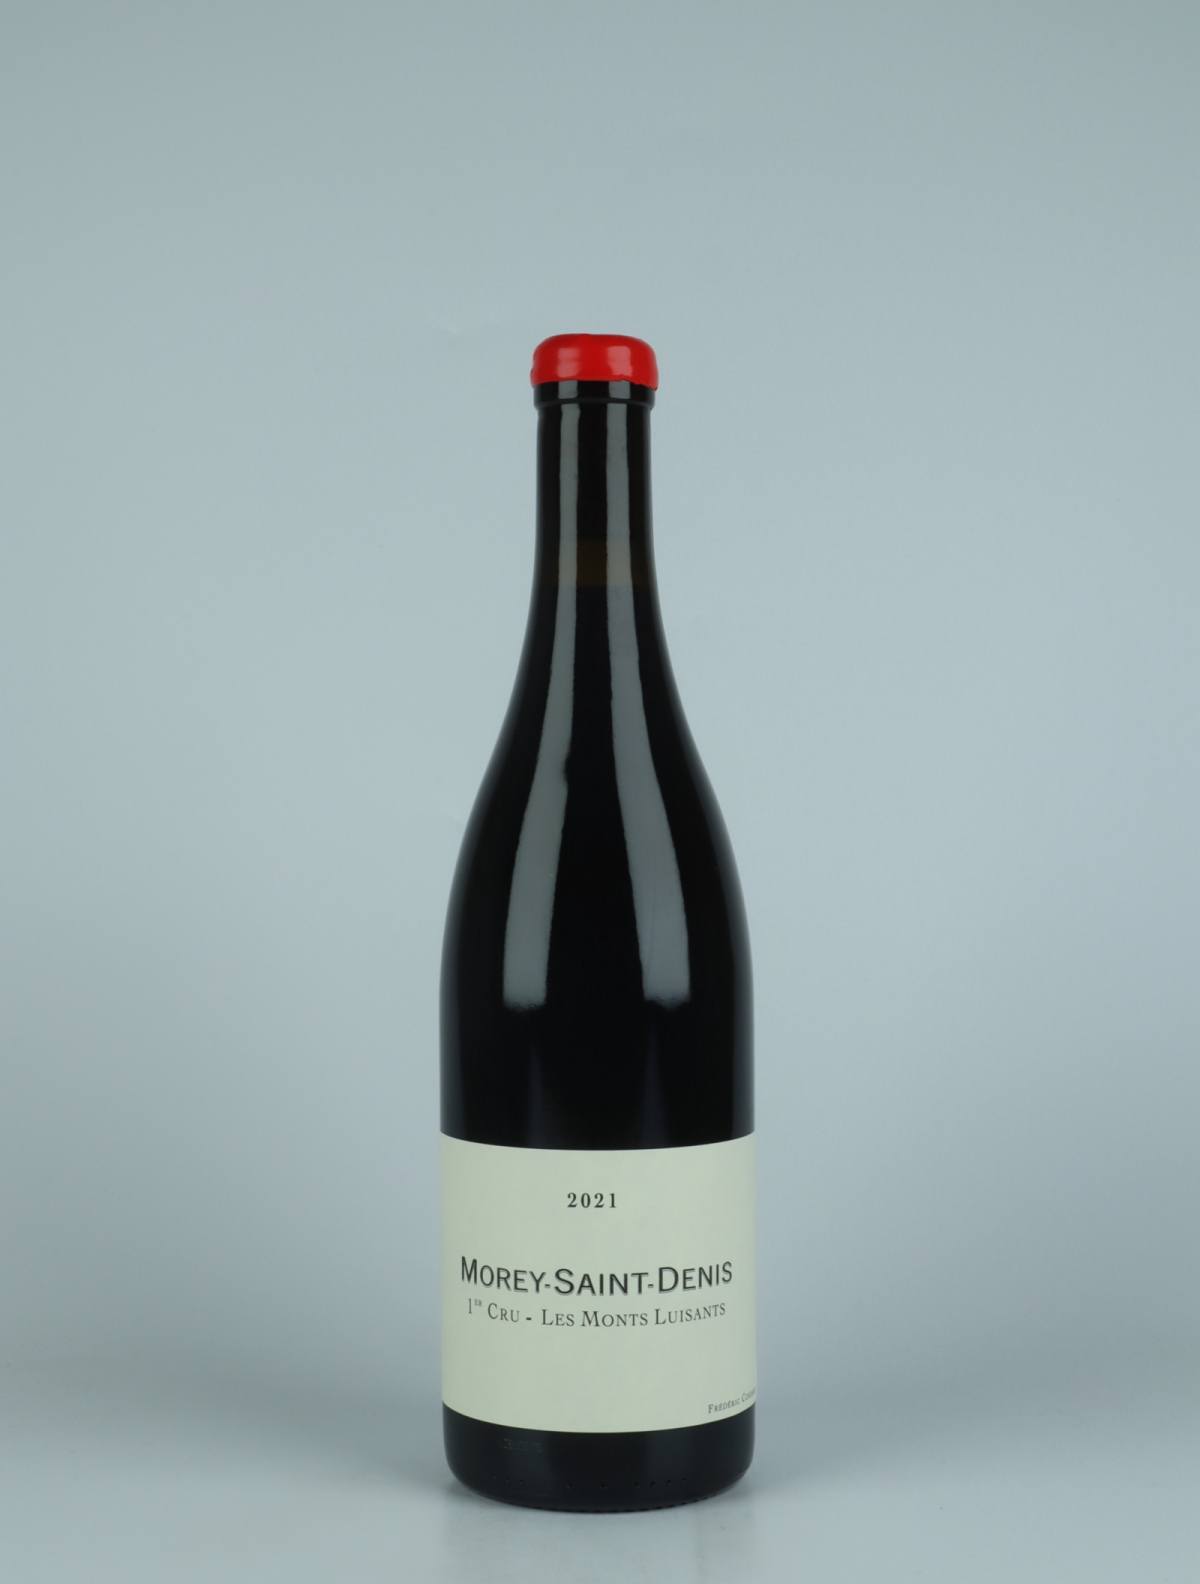 En flaske 2021 Morey Saint Denis 1. Cru - Les Monts Luisants Rødvin fra Frédéric Cossard, Bourgogne i Frankrig